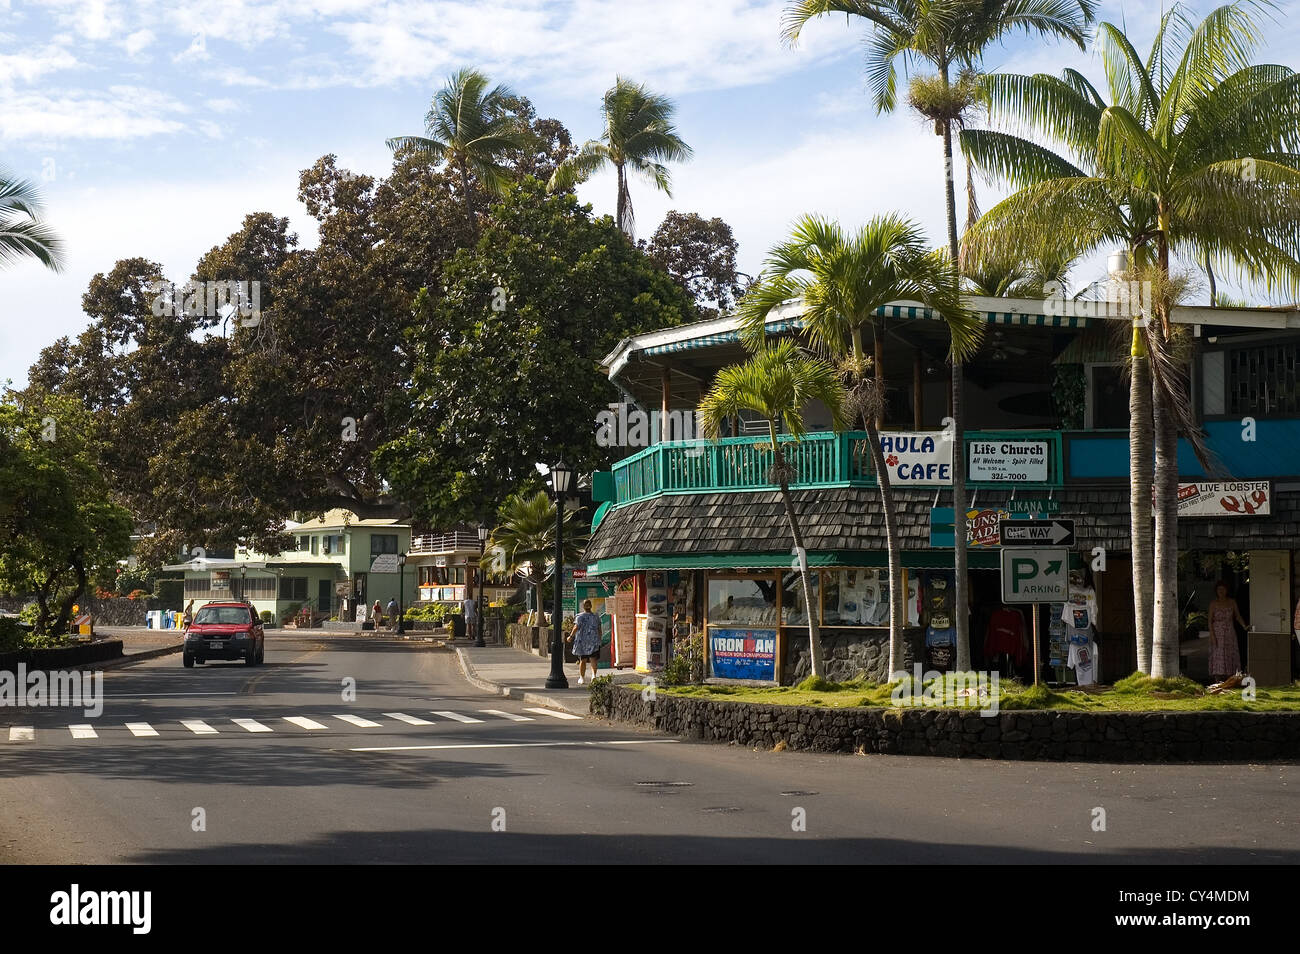 Elk284-2832 Hawaii, HI, Kailua-Kona, street scene Stock Photo